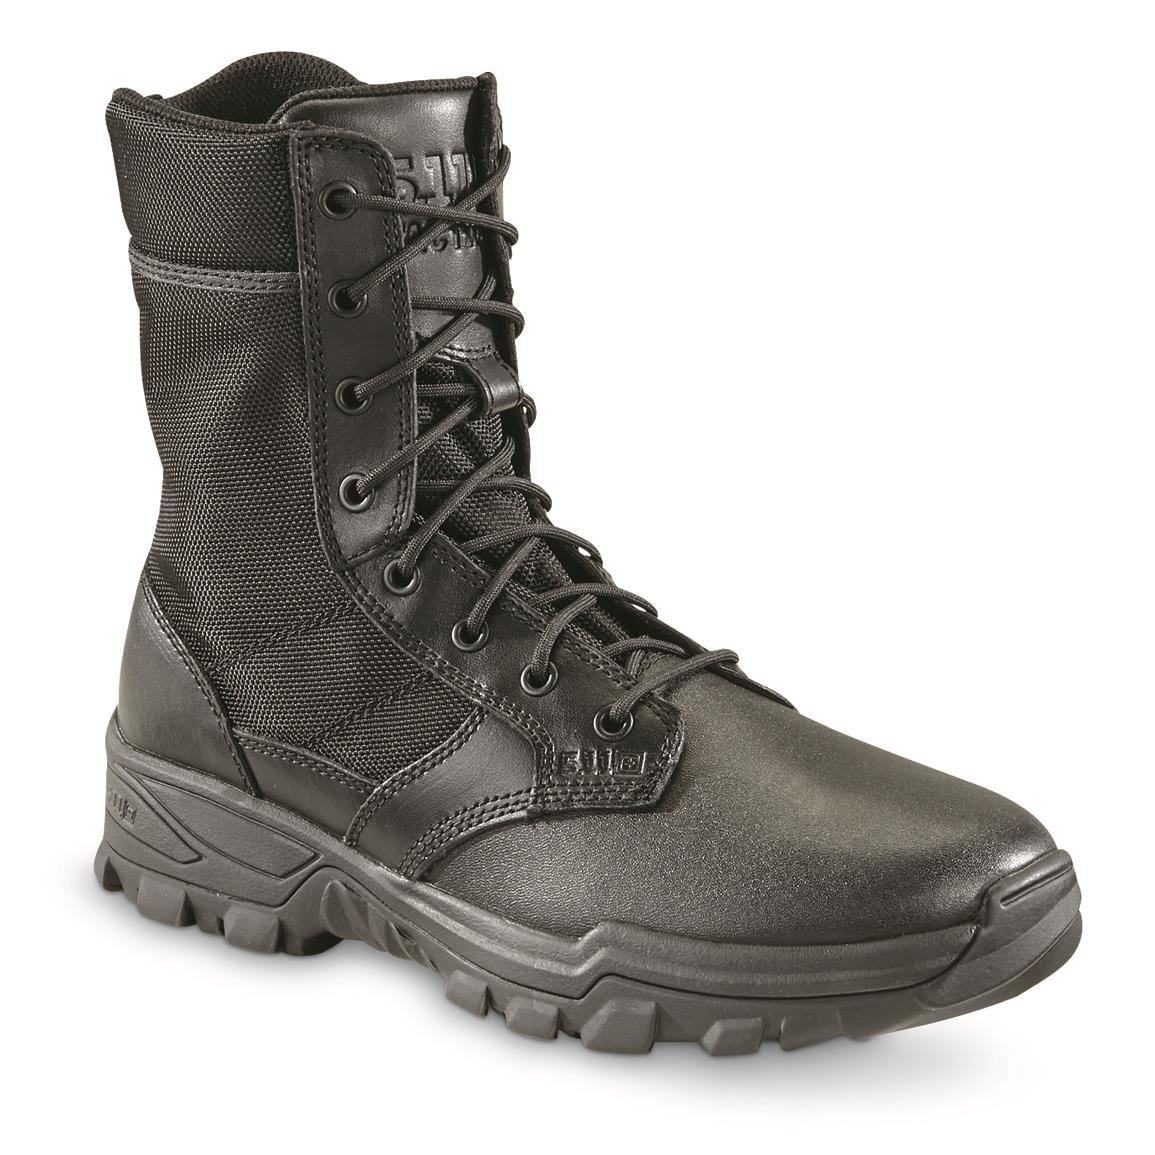 5.11 Tactical Men's Speed 3.0 Side-zip Tactical Boots, Black